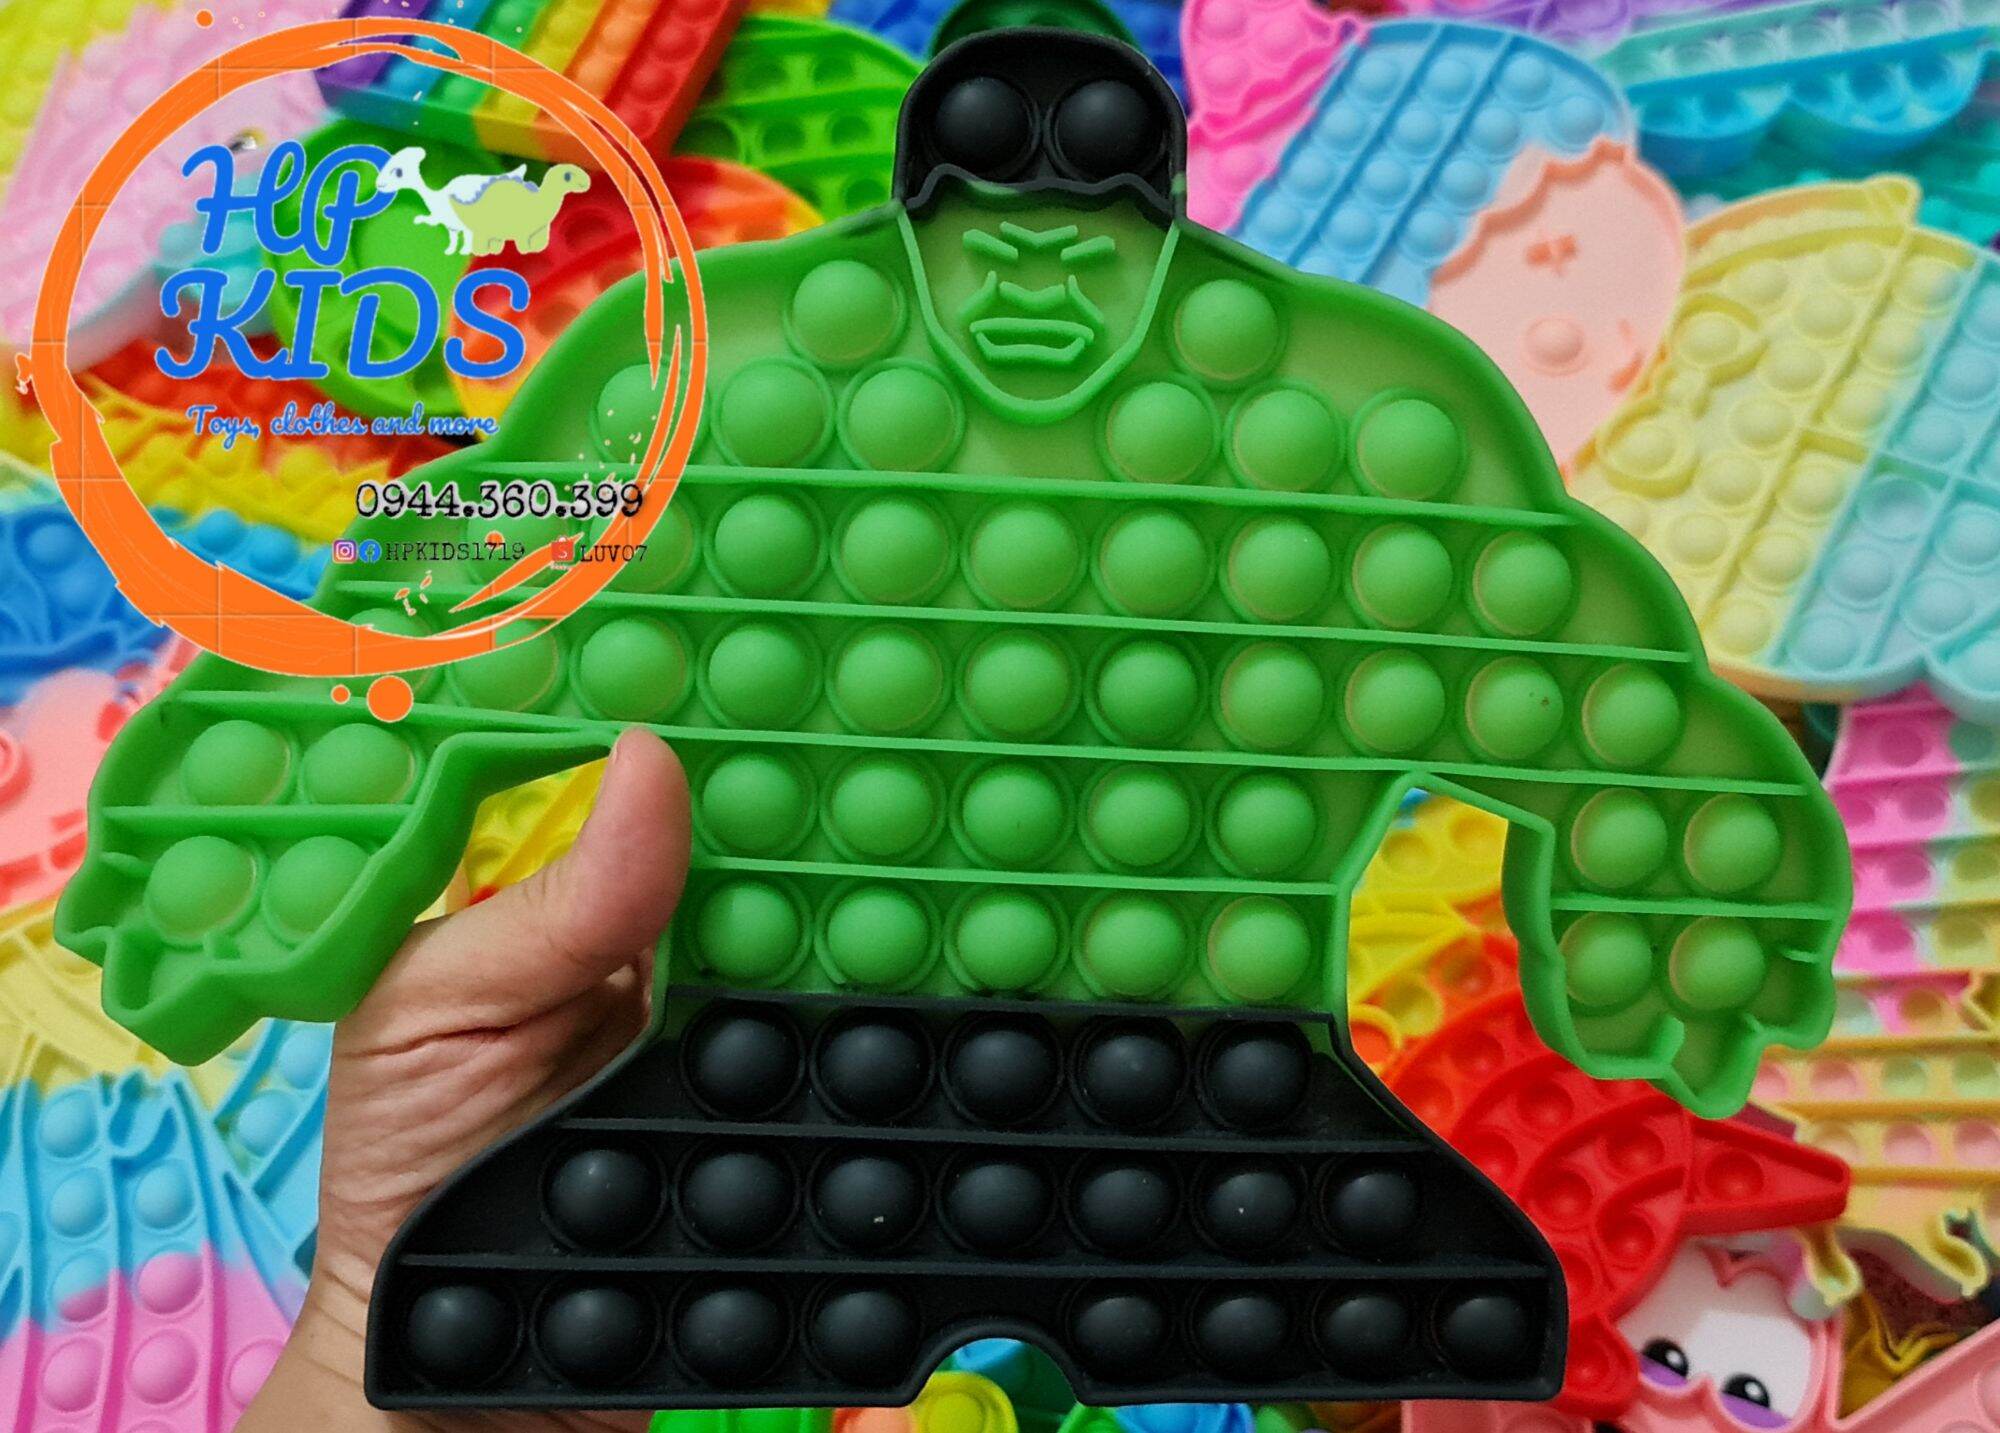 Pop it fidget toy xả tress hơn 40 mẫu mã và kích cỡ hulk, minion, elsa